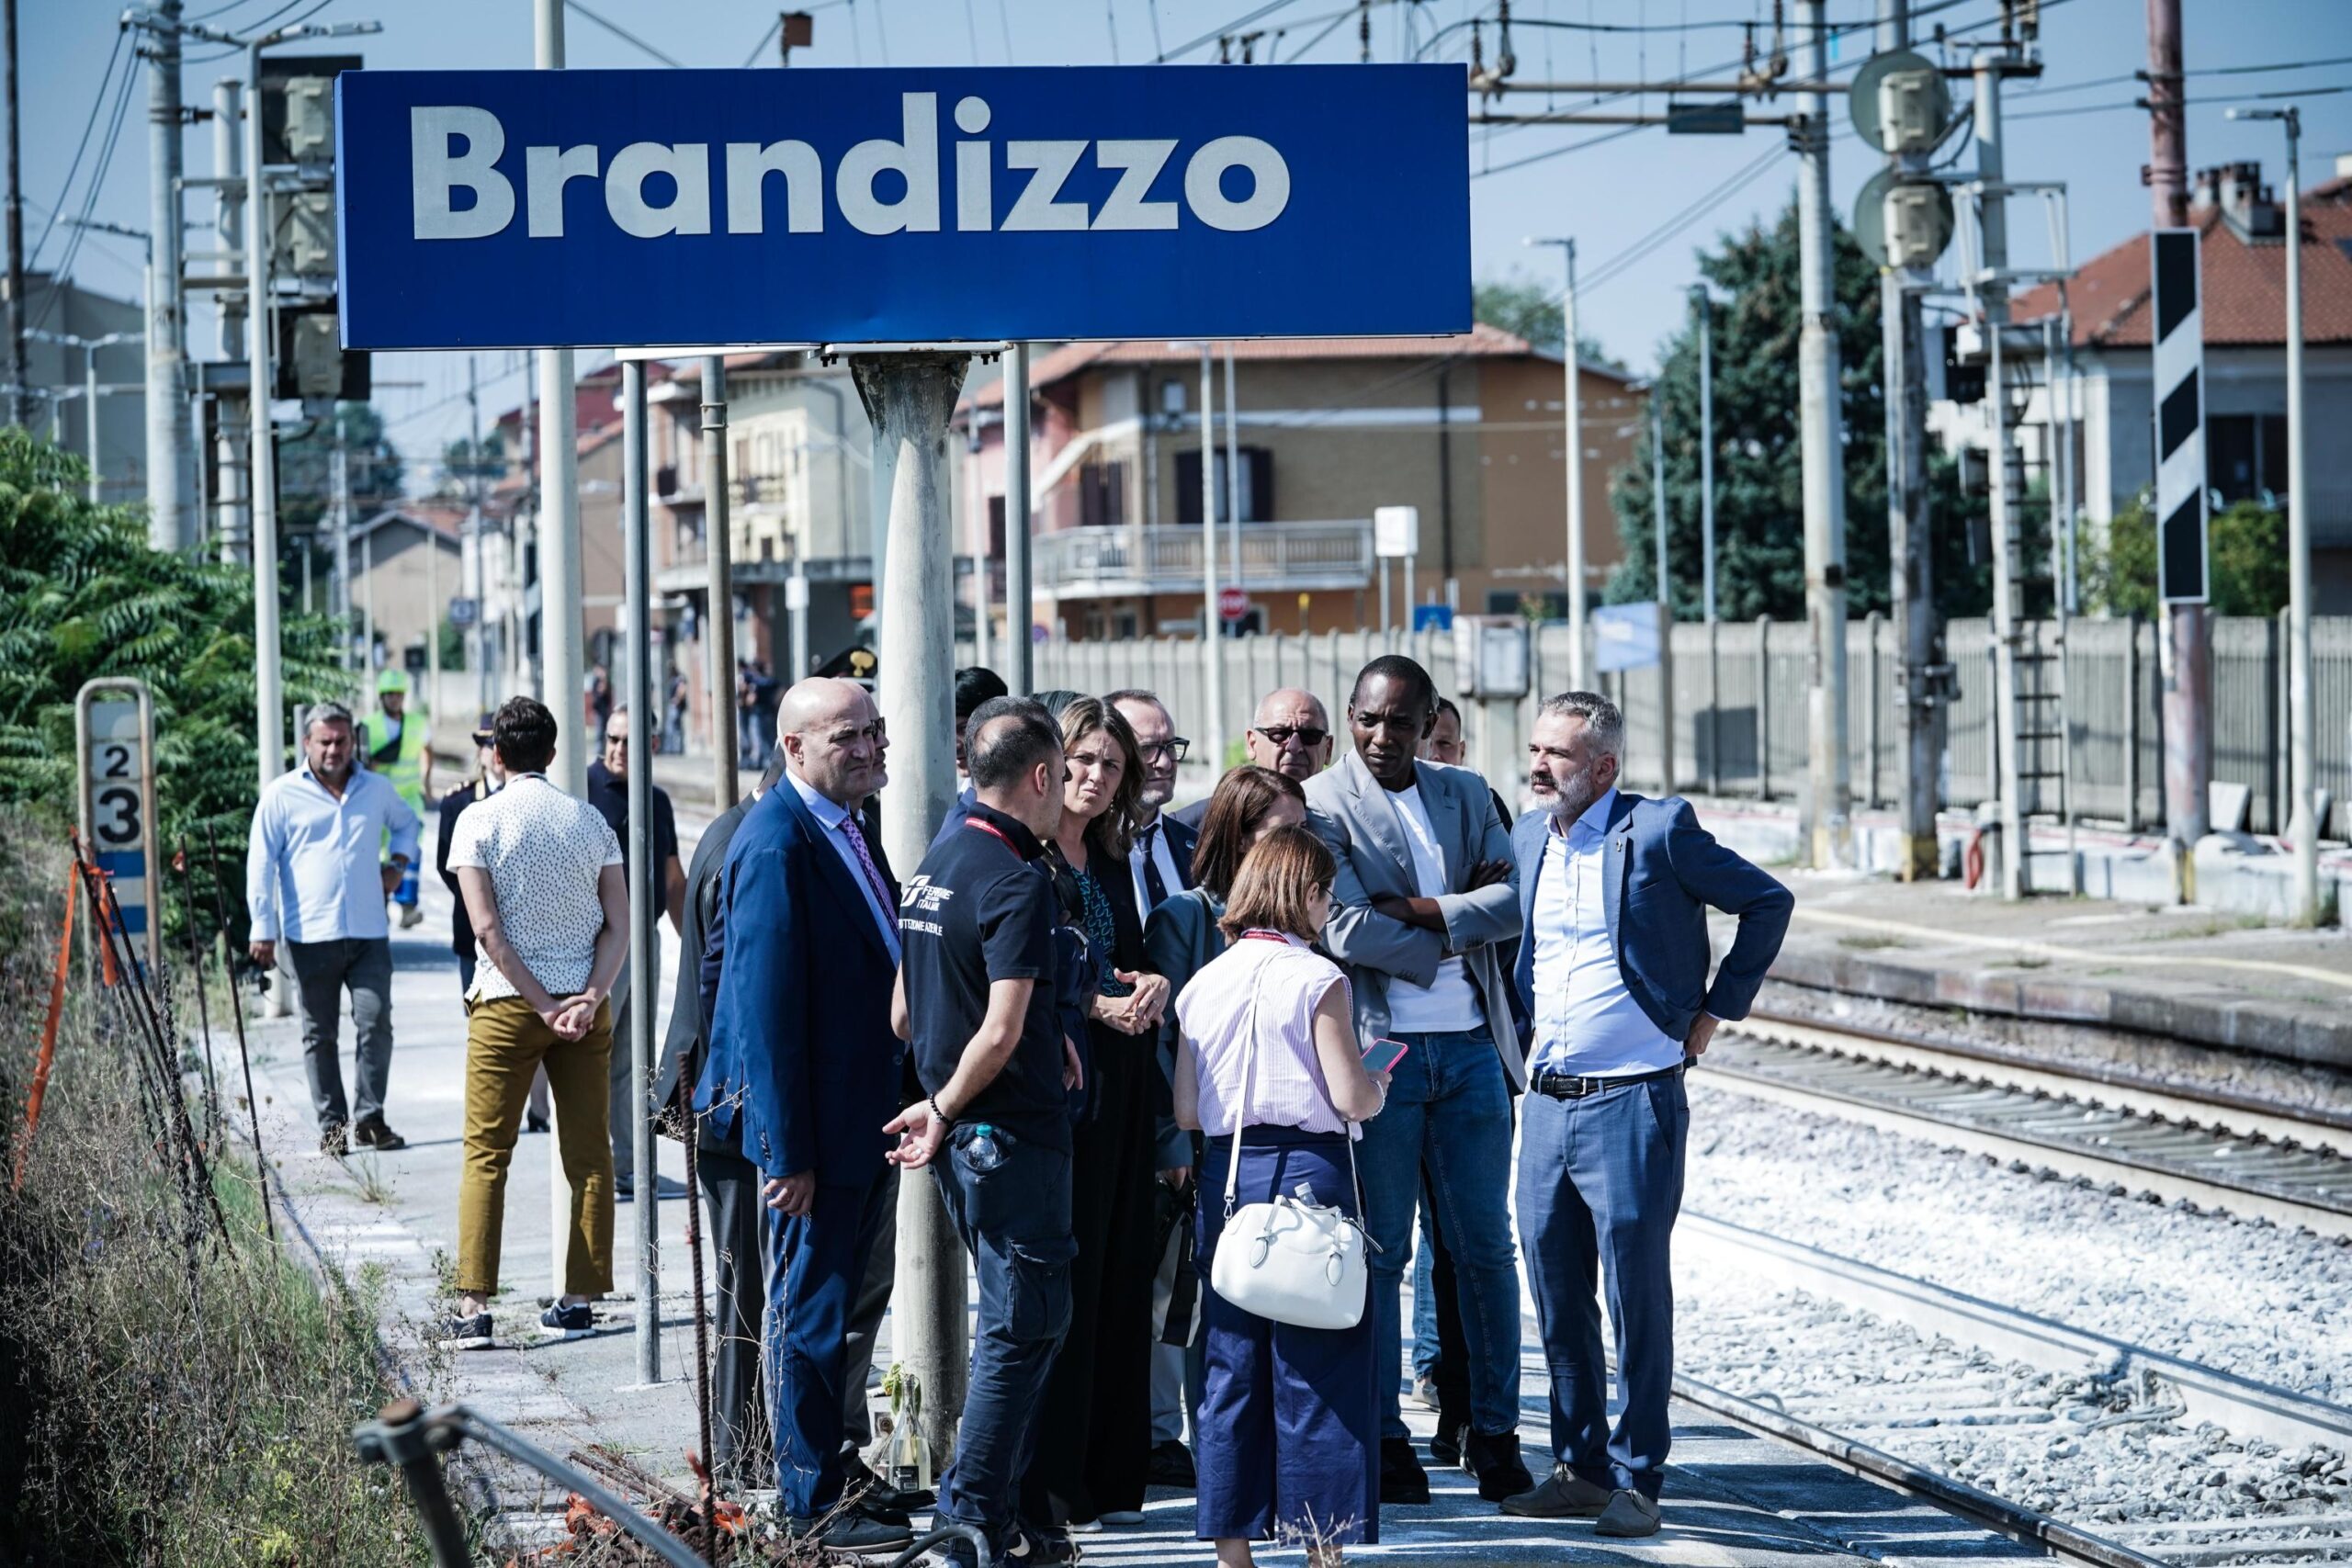 Il sopralluogo di Chiara Gribaudo e commissione parlamentare sicurezza sul lavoro alla stazione di Brandizzo luogo della strage ferroviaria, Torino, 8 settembre 2023 ANSA/TINO ROMANO